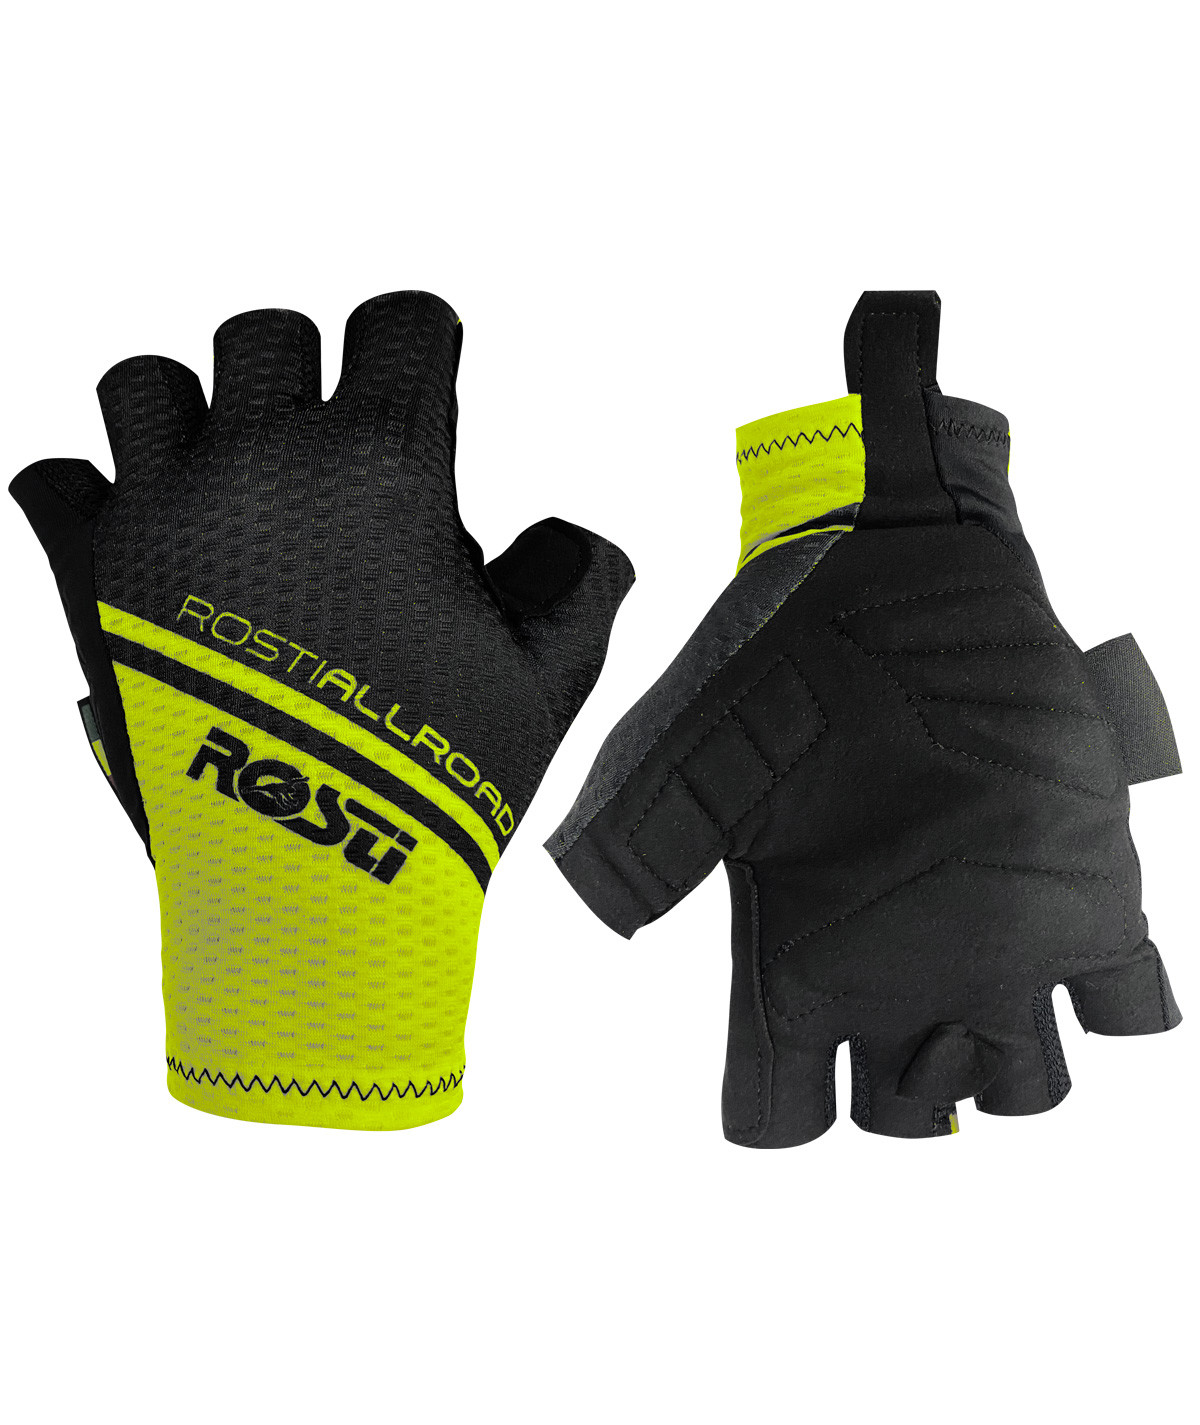 AllRoad summer glove